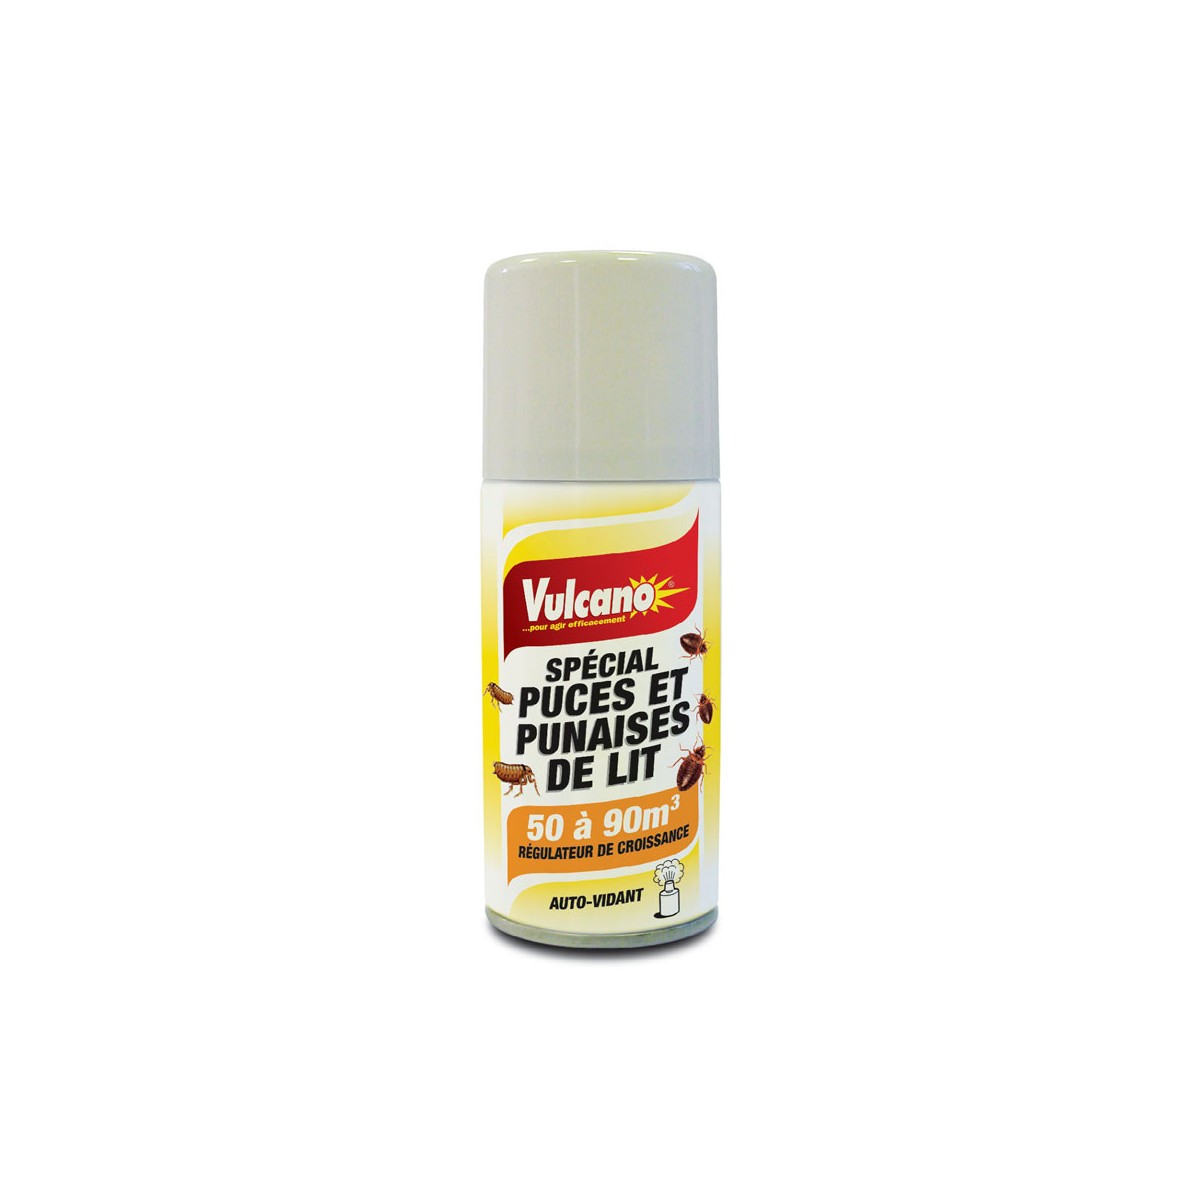 Insecticide puces et punaises de lit de 50 à 90m3 - Vulcano